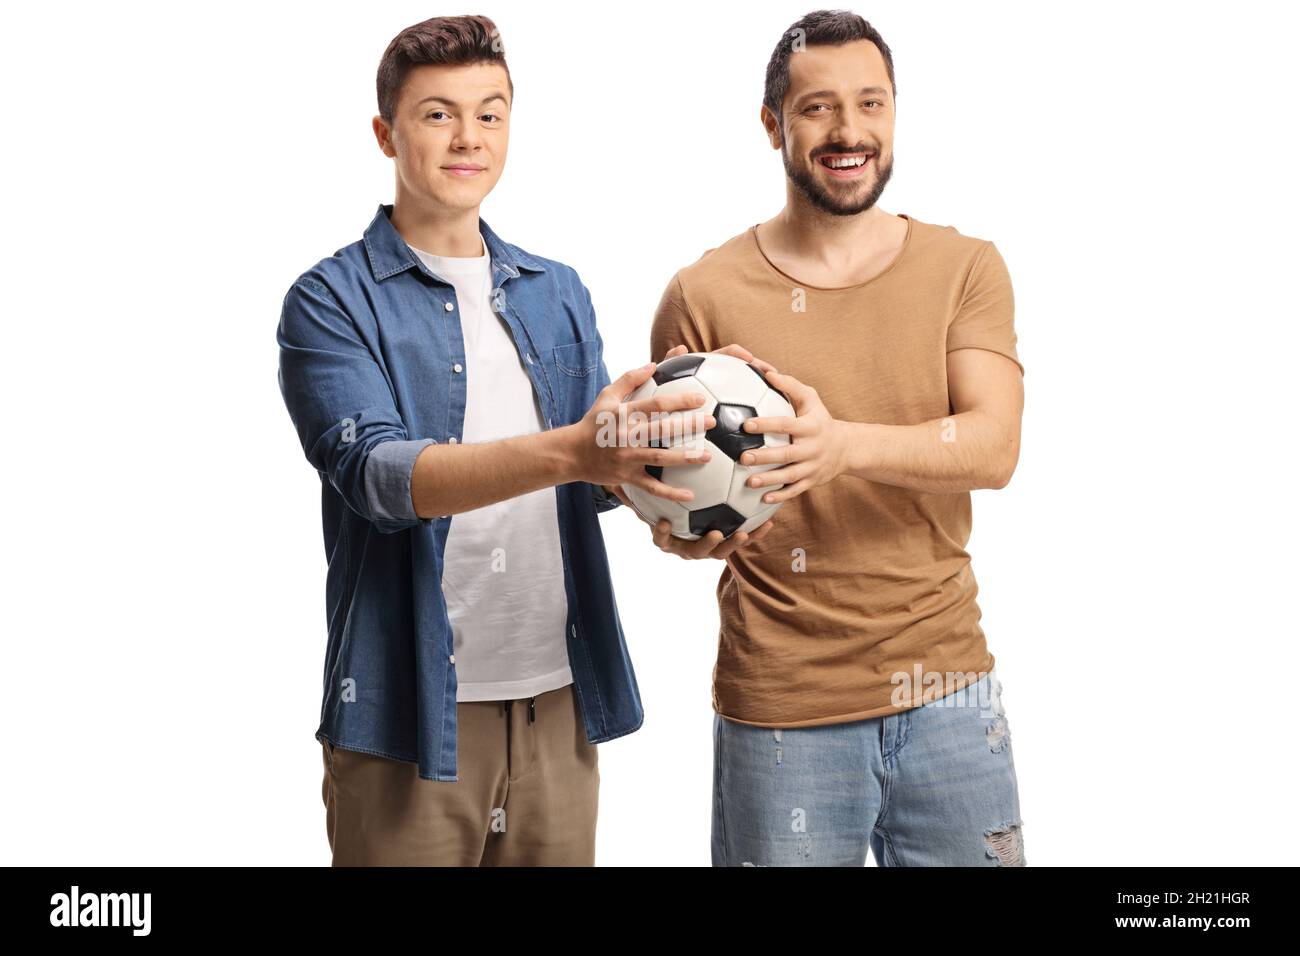 Deux jeunes hommes tenant un football ensemble isolé sur fond blanc Banque D'Images